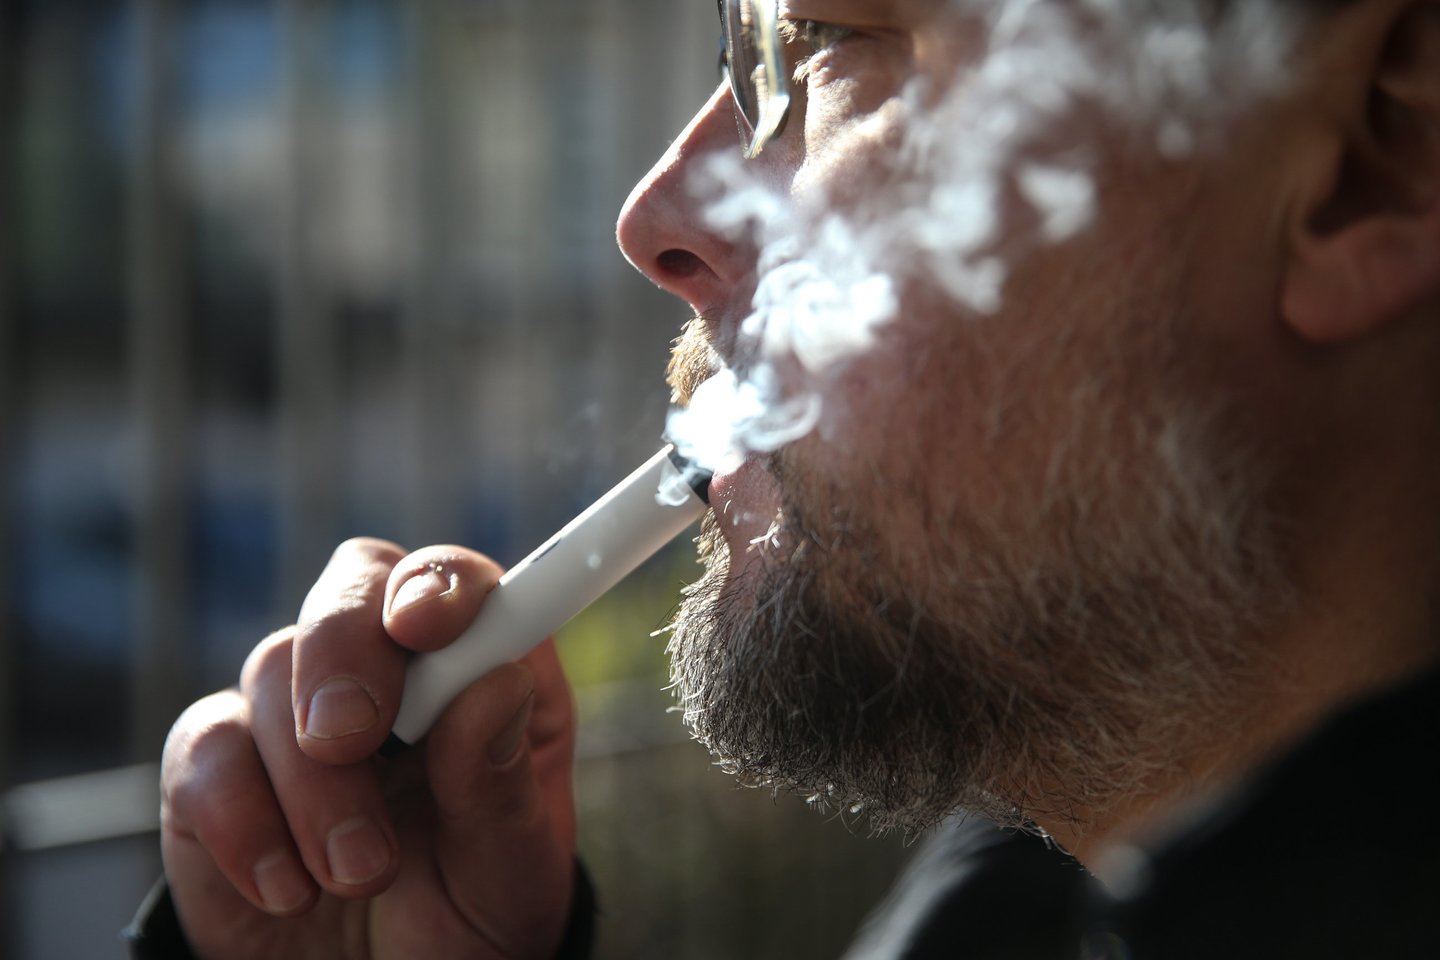 Kaitinamasis tabakas pamažu kėsinasi išstumti iš rinkos tradicines cigaretes.<br>R.Danisevičiaus nuotr.